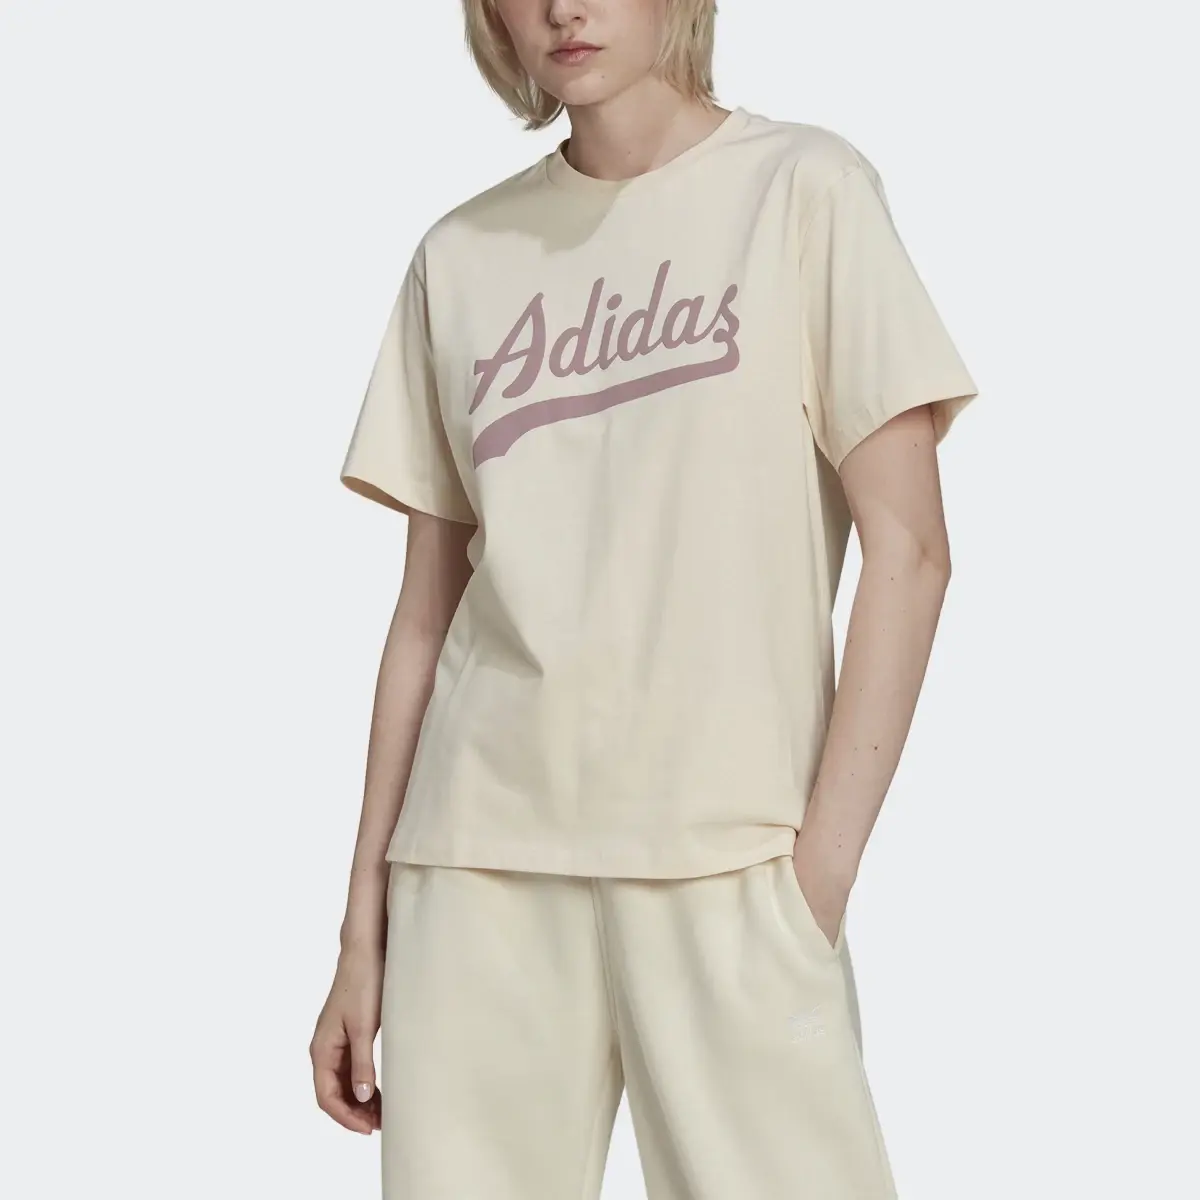 Adidas T-shirt Modern B-Ball. 1